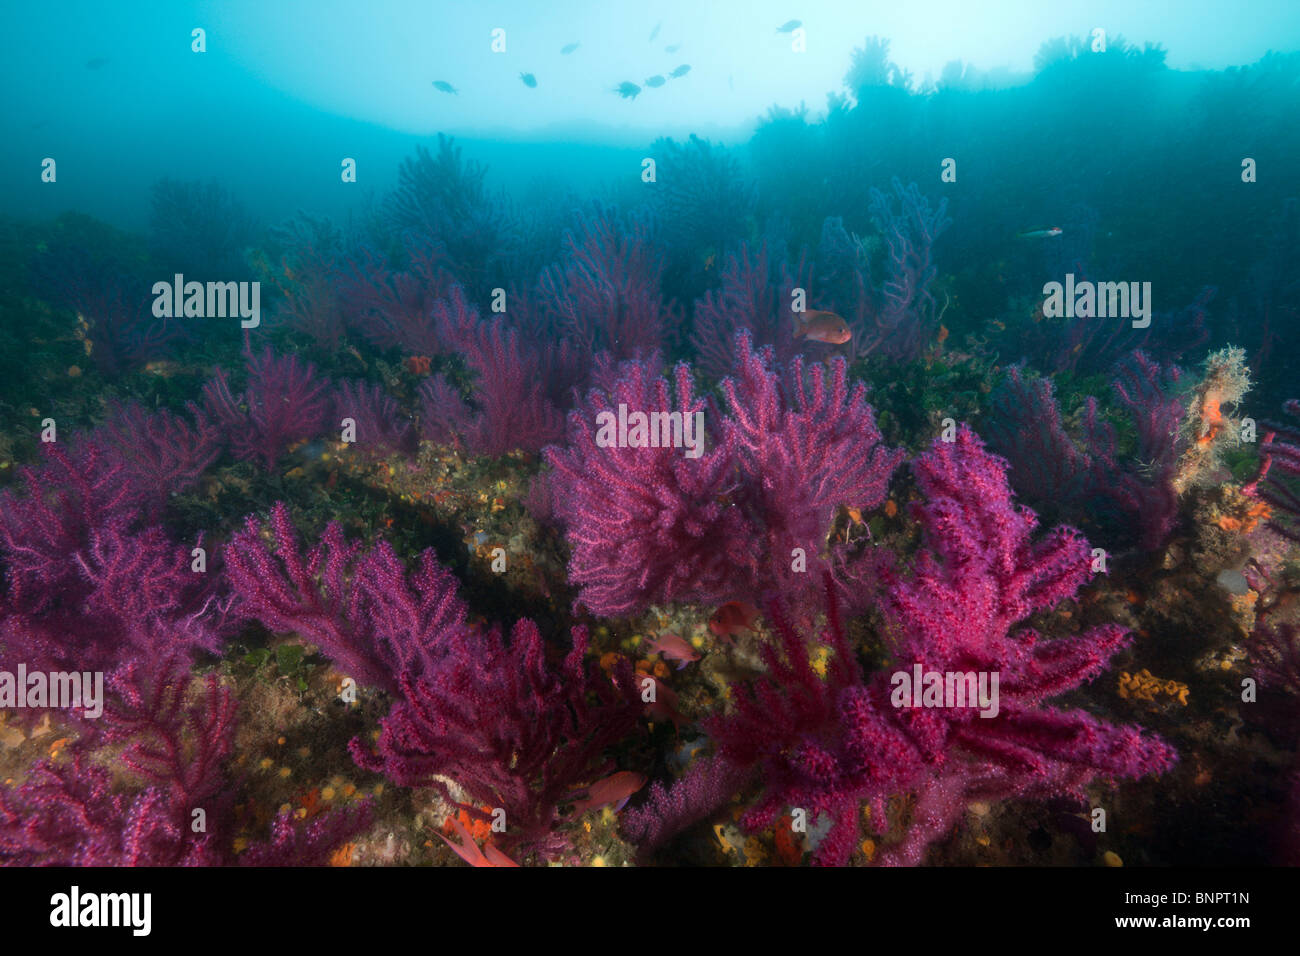 Reef with variable Gorgonians, Paramuricea clavata, Cap de Creus, Costa Brava, Spain Stock Photo